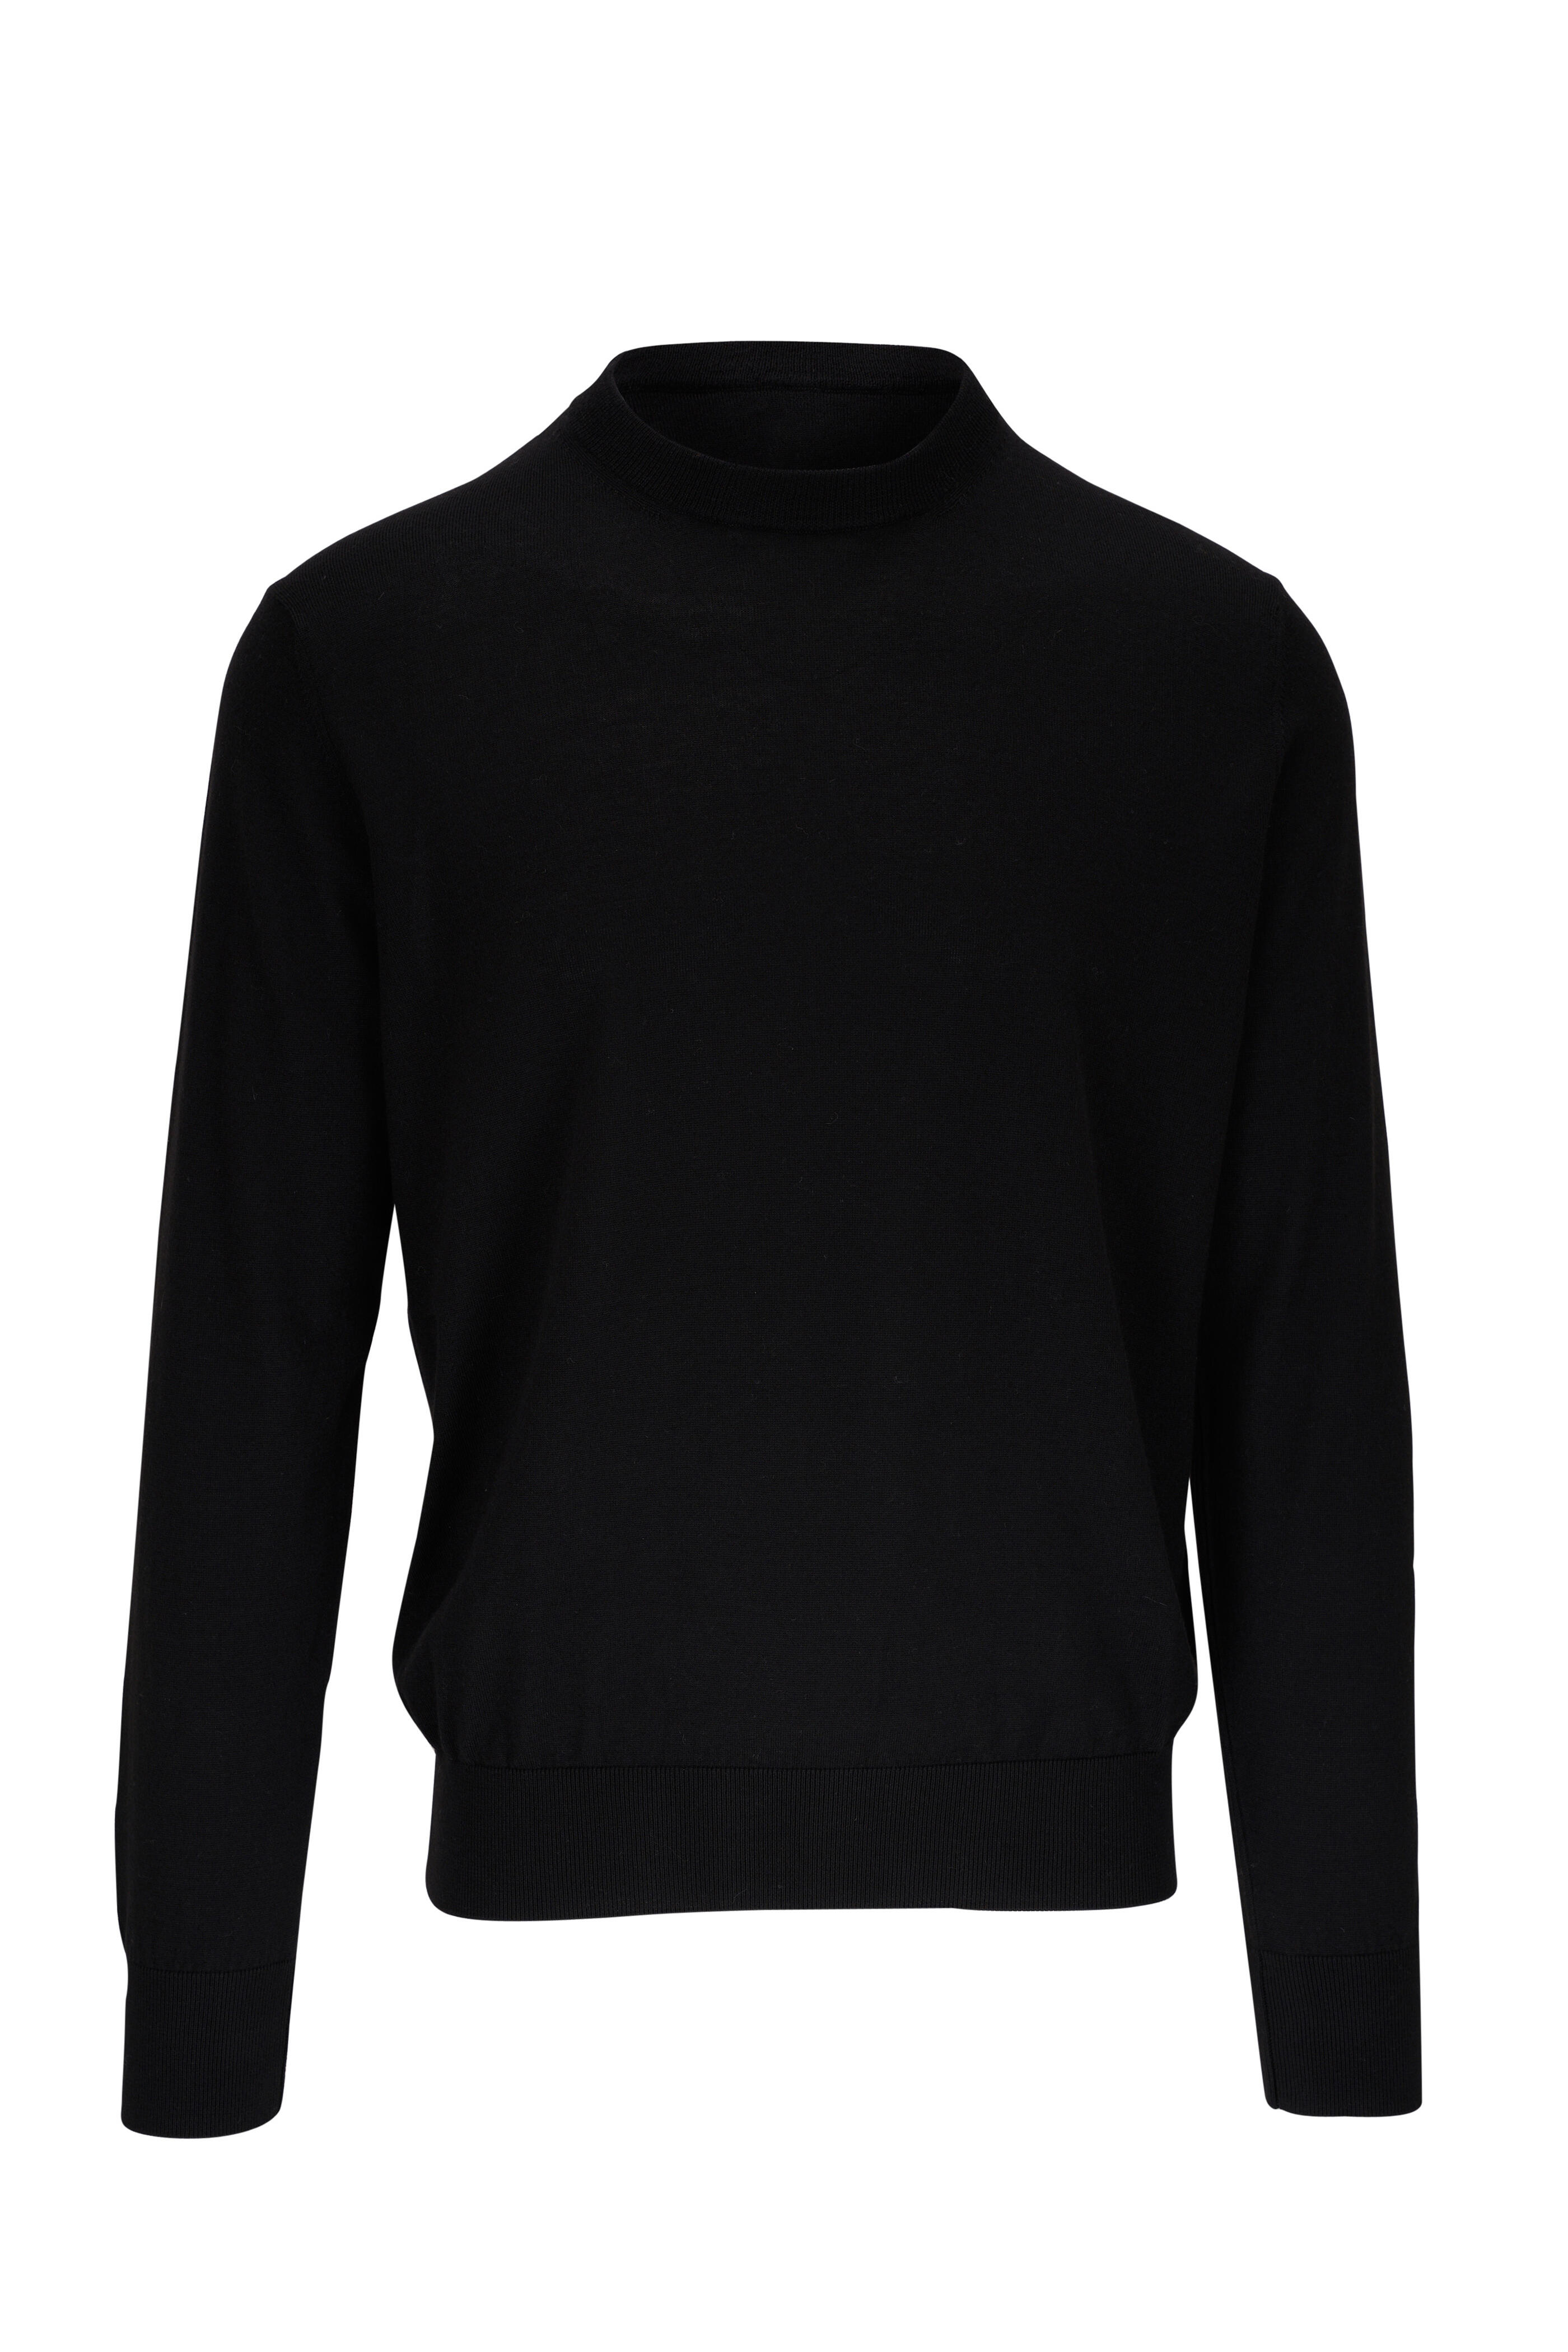 Agnona - Black Cashmere & Silk Crewneck Sweater